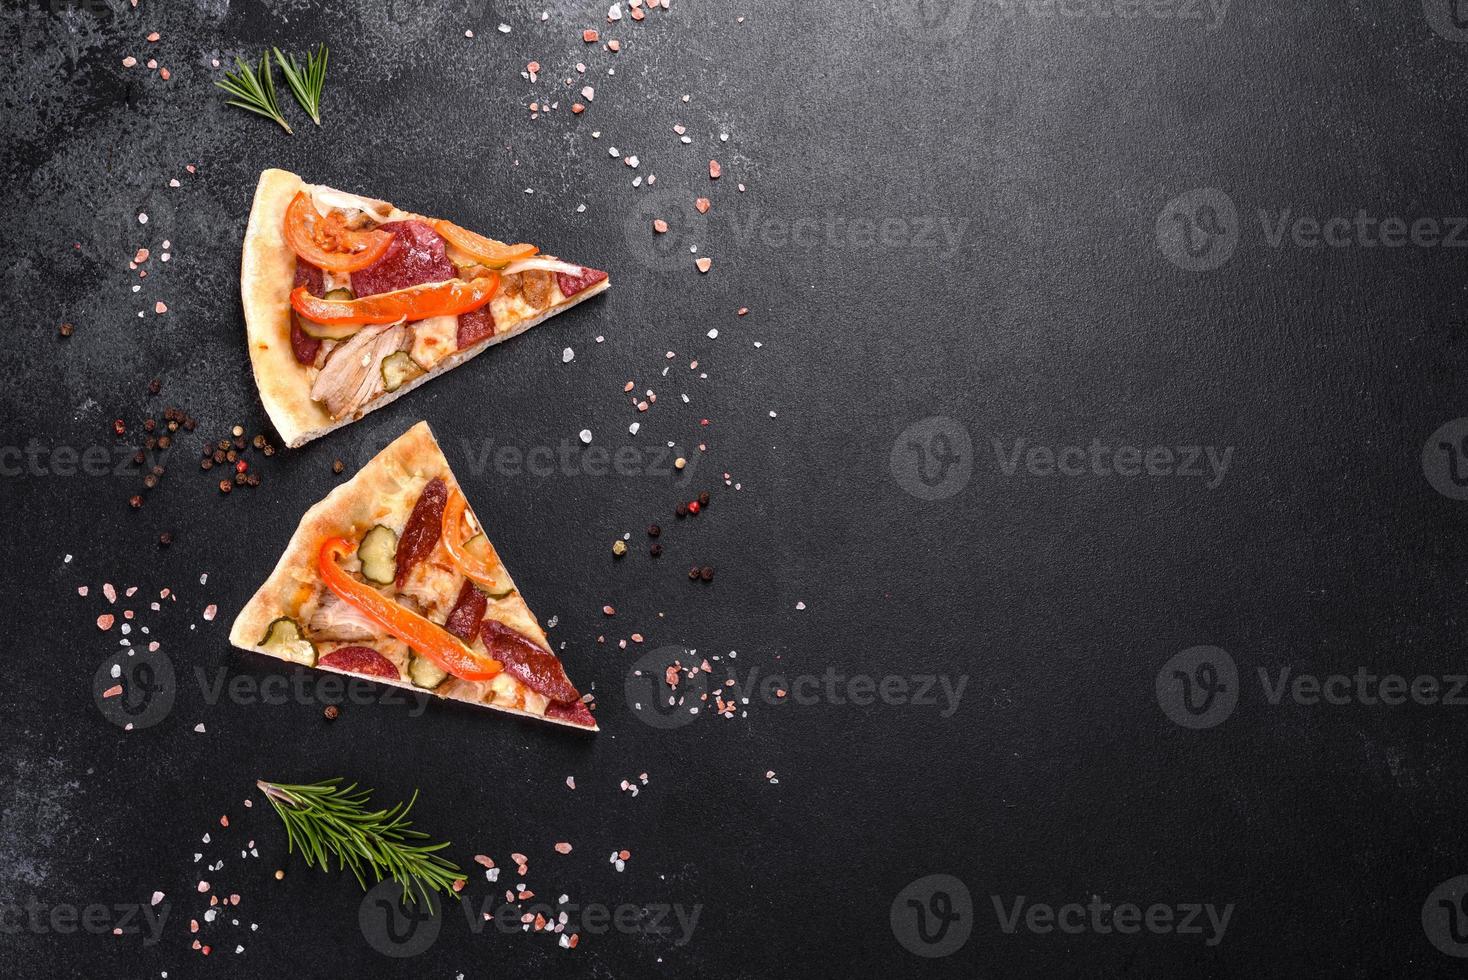 deliciosa pizza fresca feita em forno de lenha com linguiça, pimenta e tomate foto